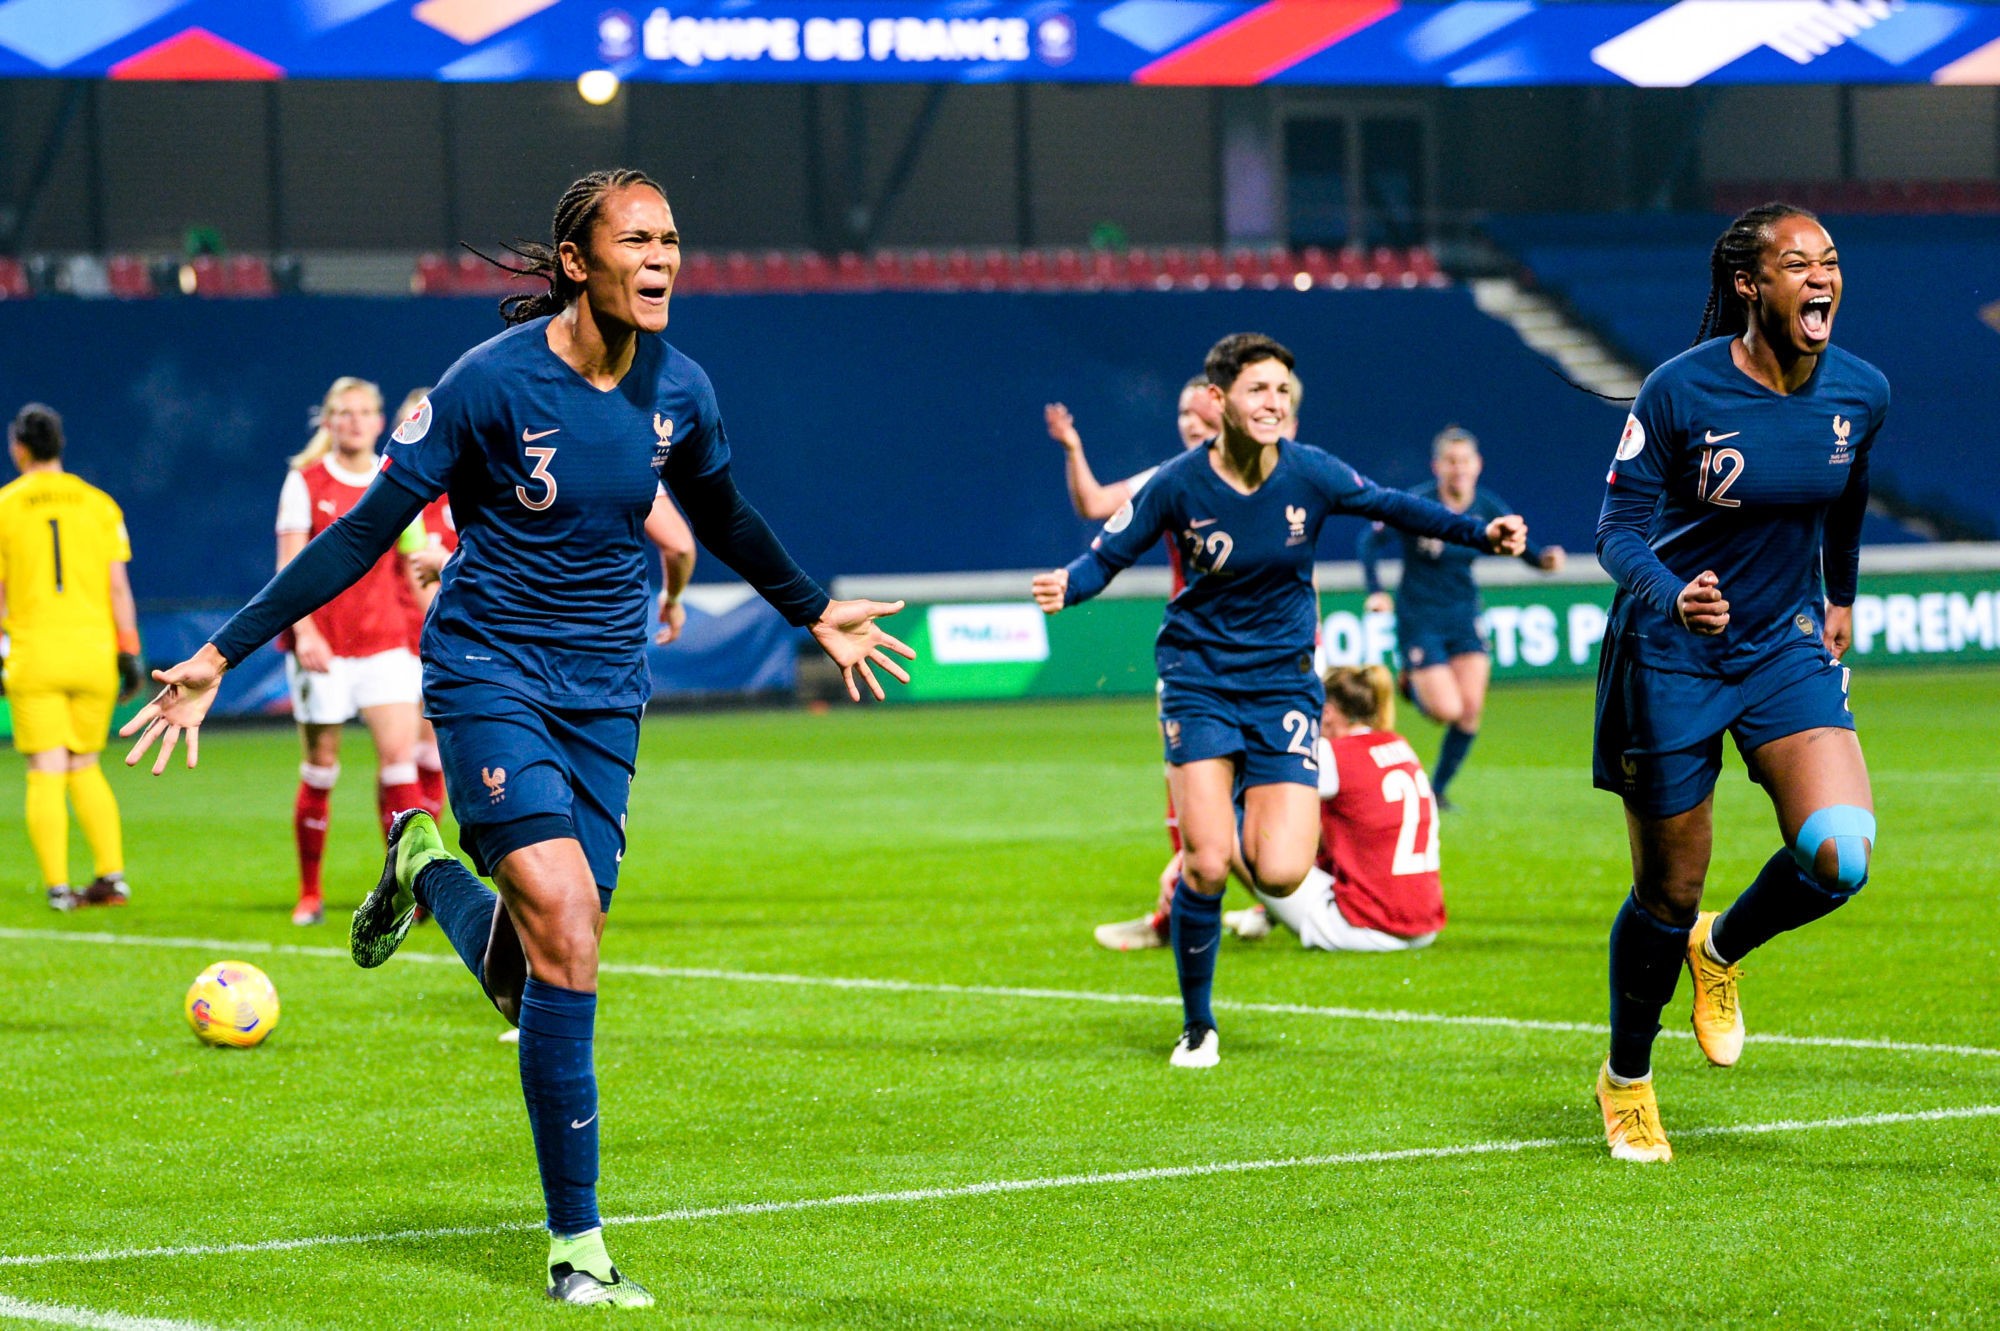 Hécatombe en équipe de France féminine : 3 joueuses se retirent de la sélection, la crise s’intensifie